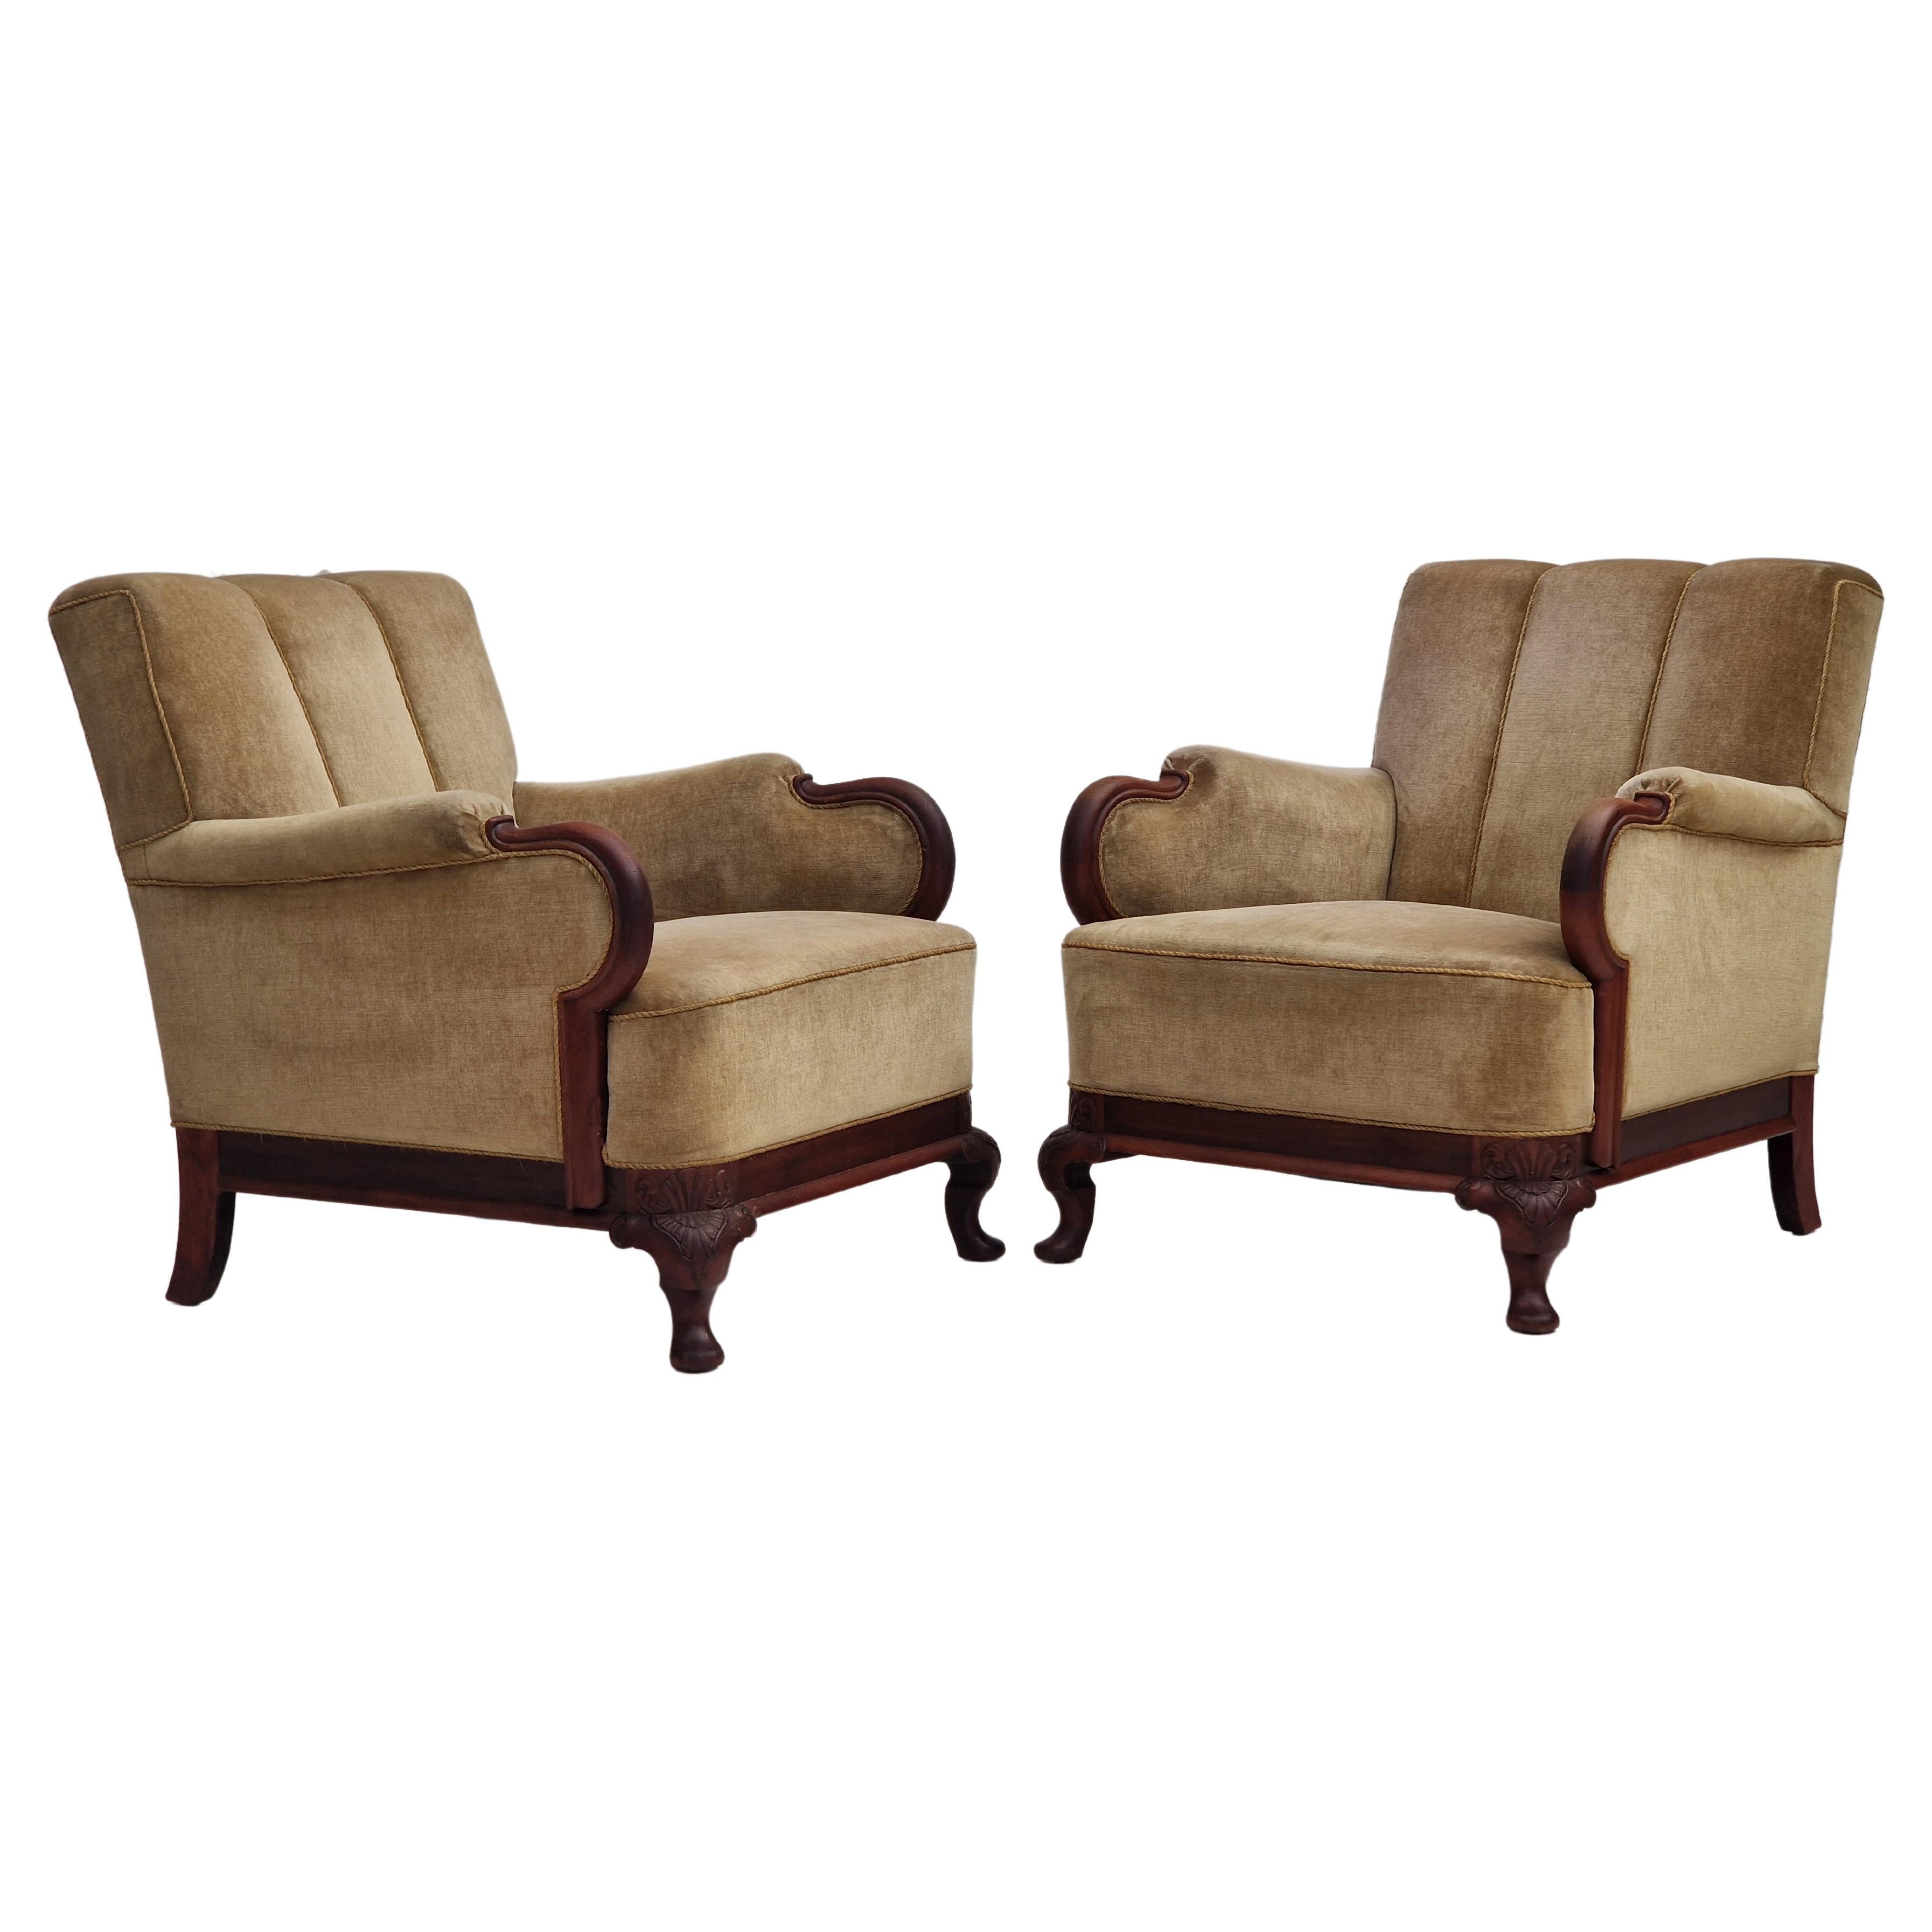 Ensemble de fauteuils danois des années 1950, design, bois de teck, velours, état d'origine.